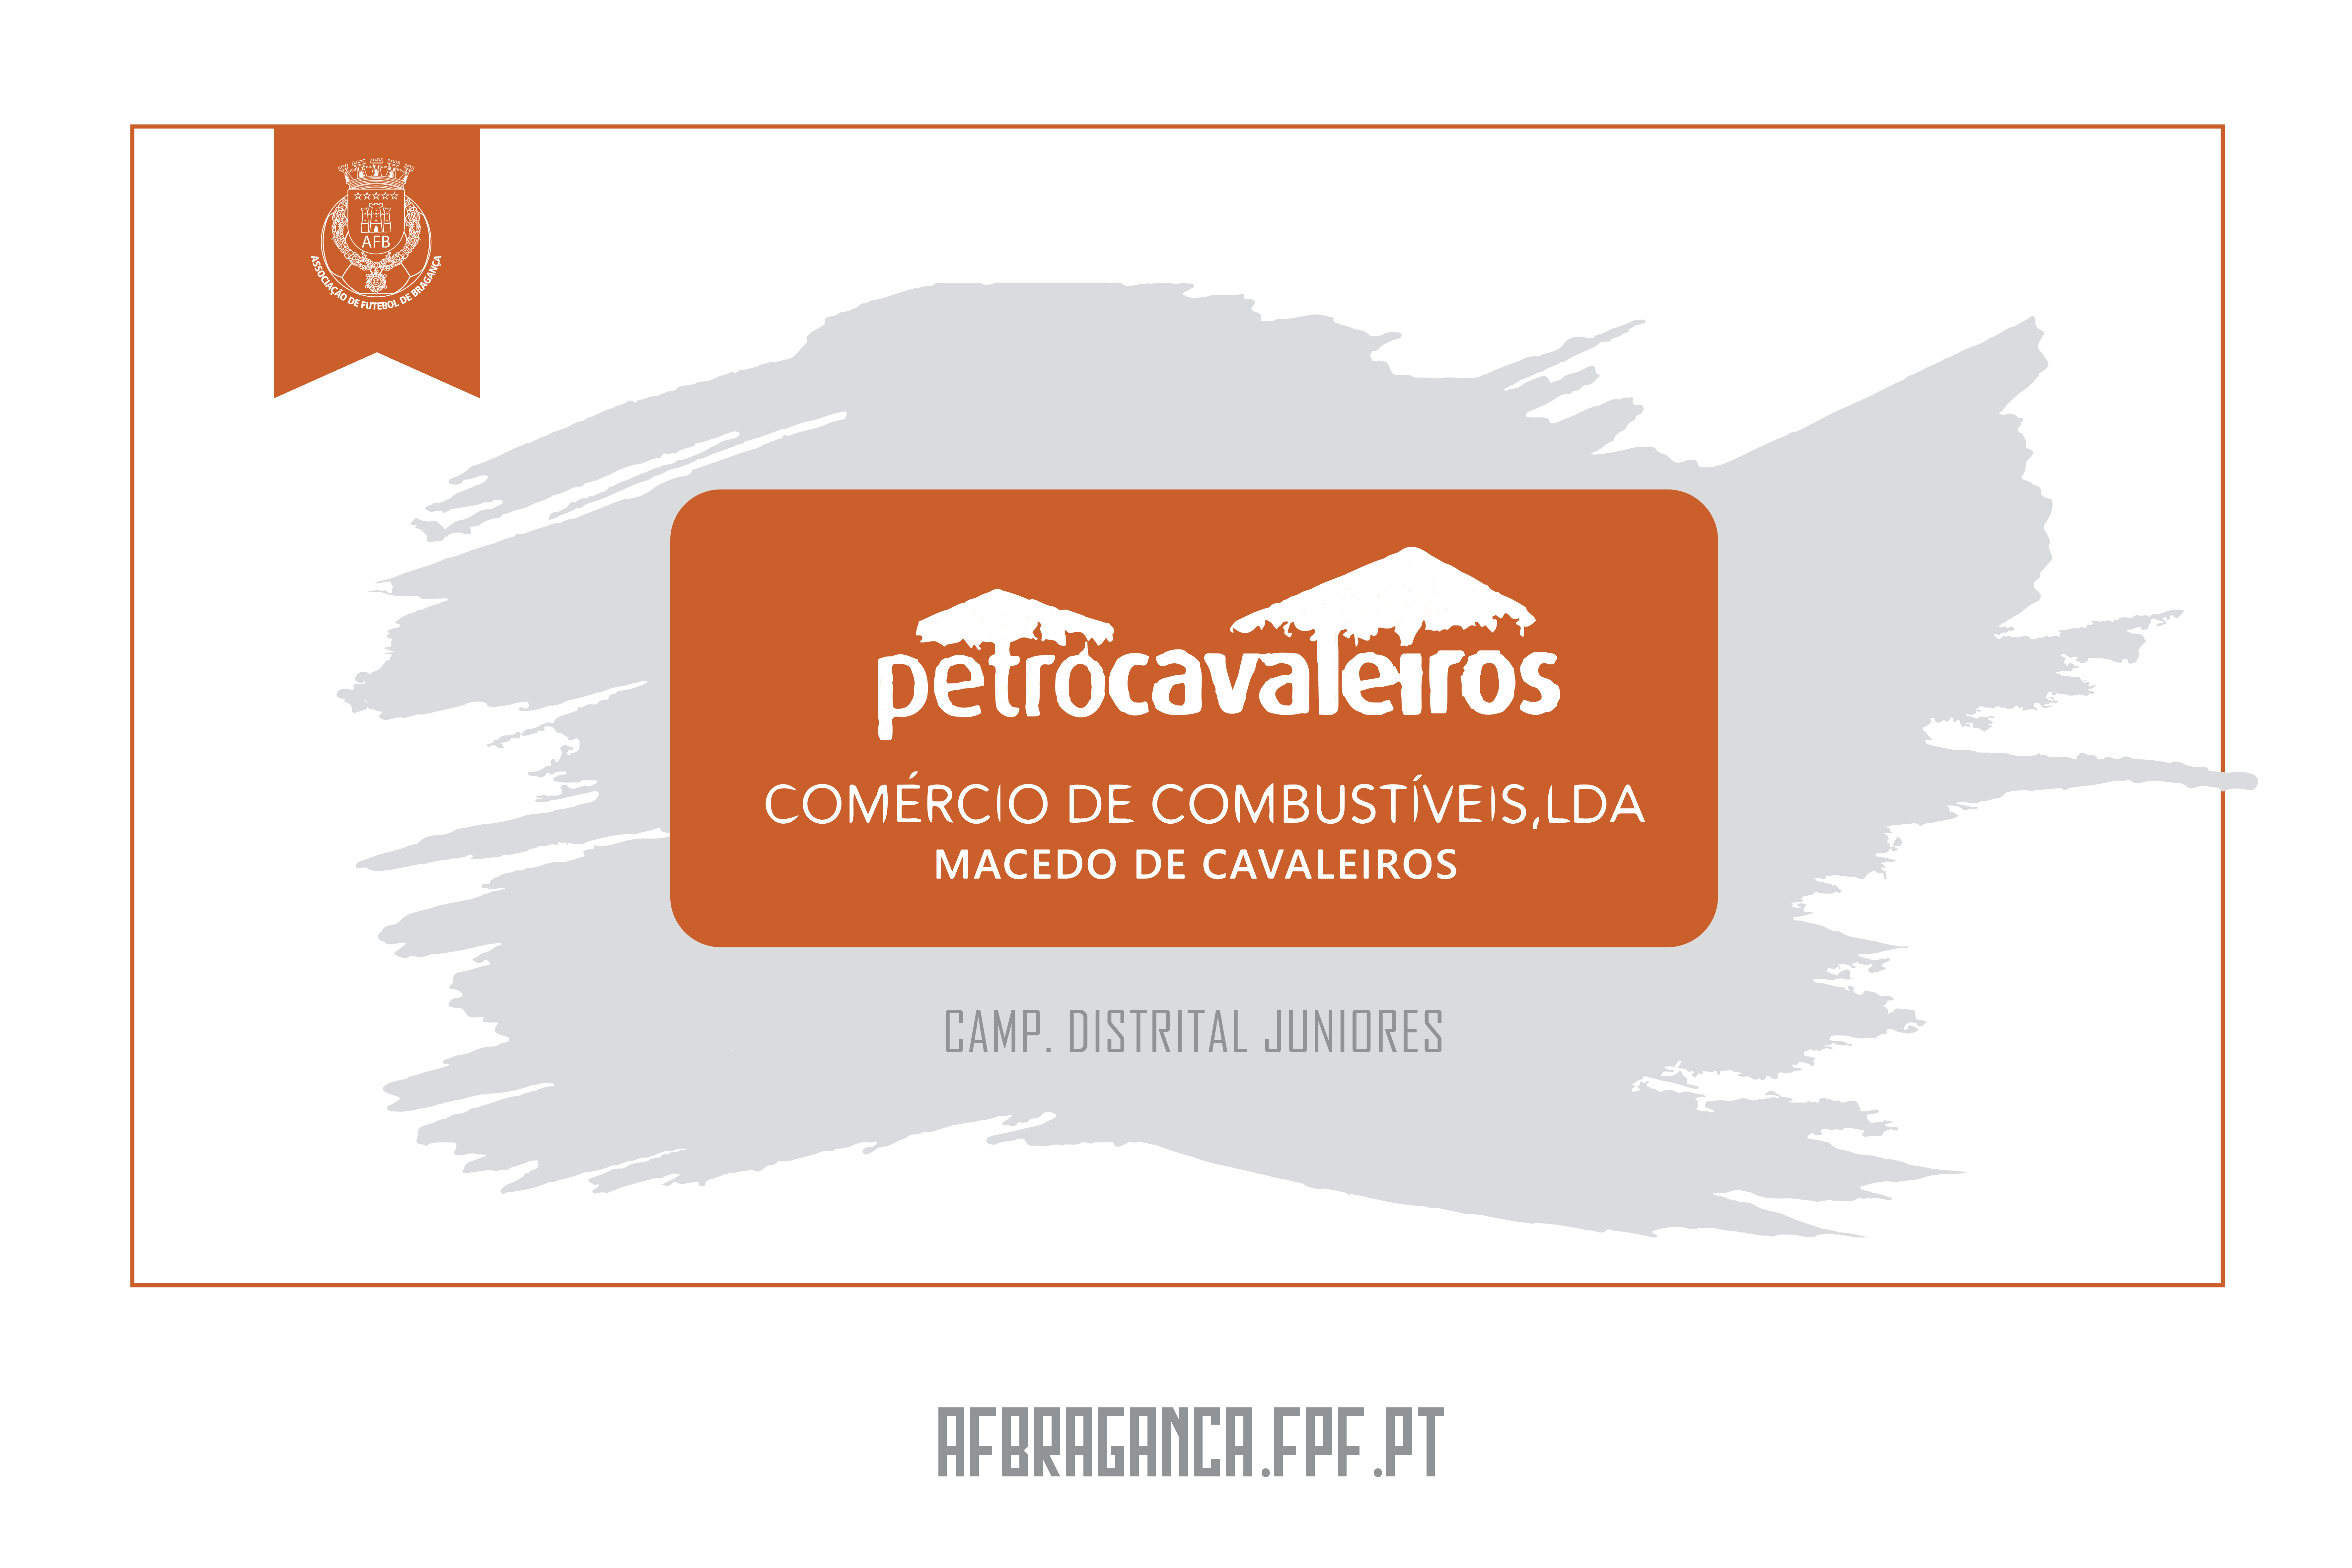 Campeonato Distrital de Juniores | Petrocavaleiros